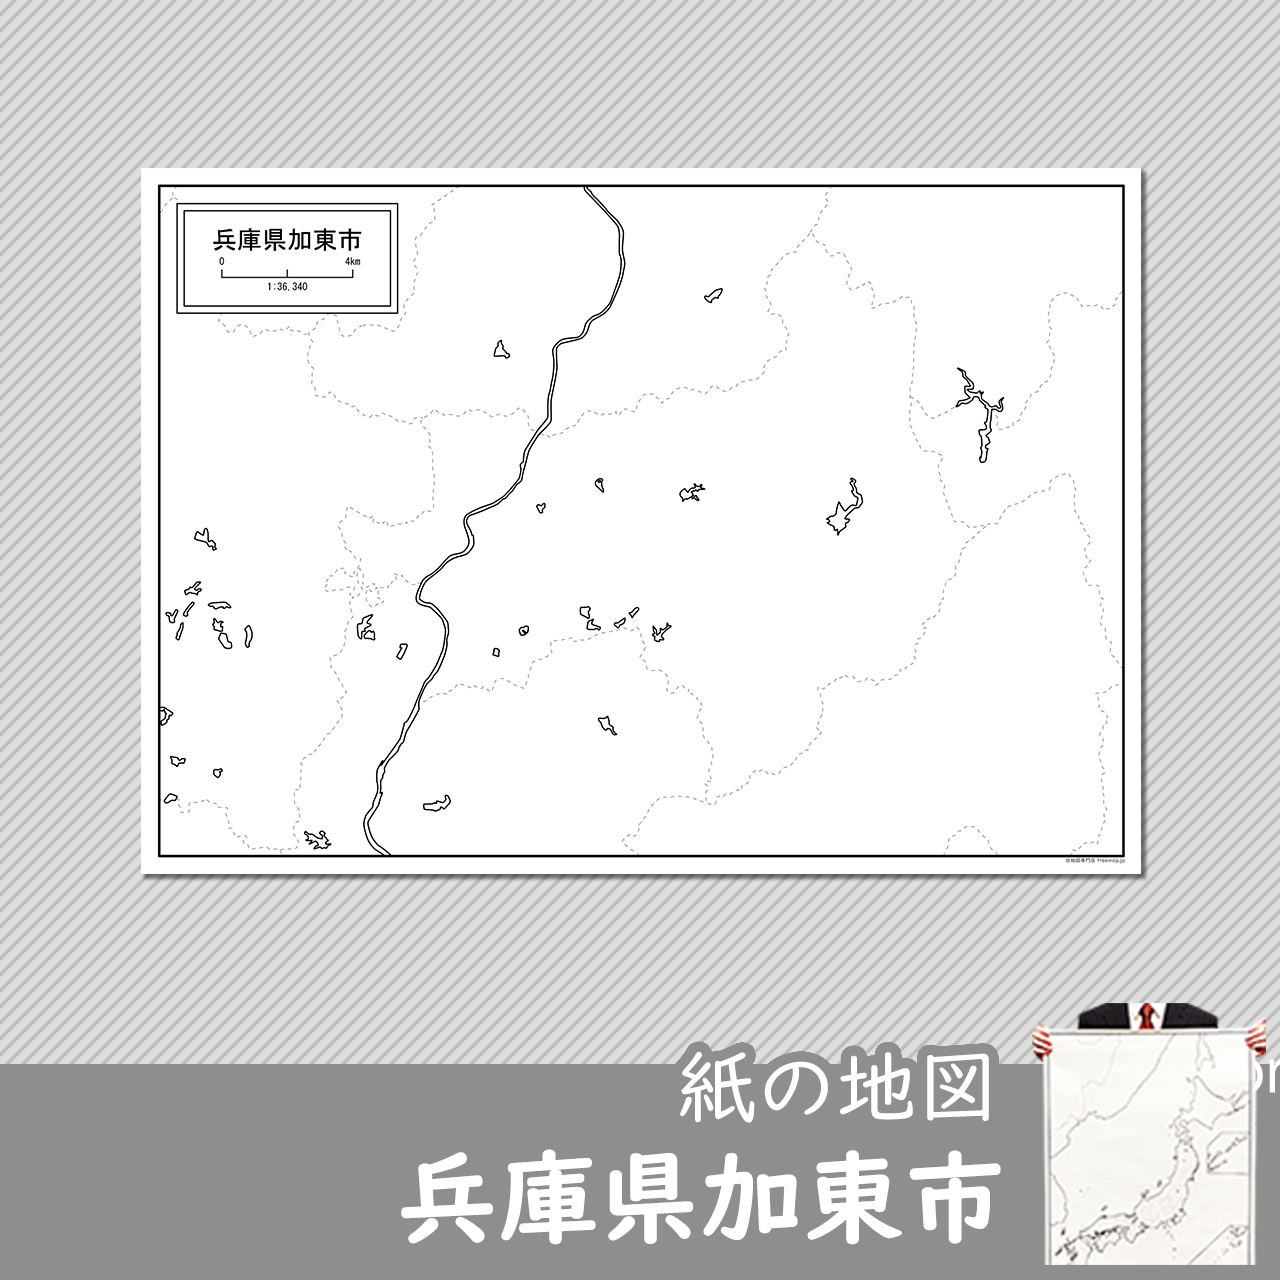 加東市の紙の白地図のサムネイル